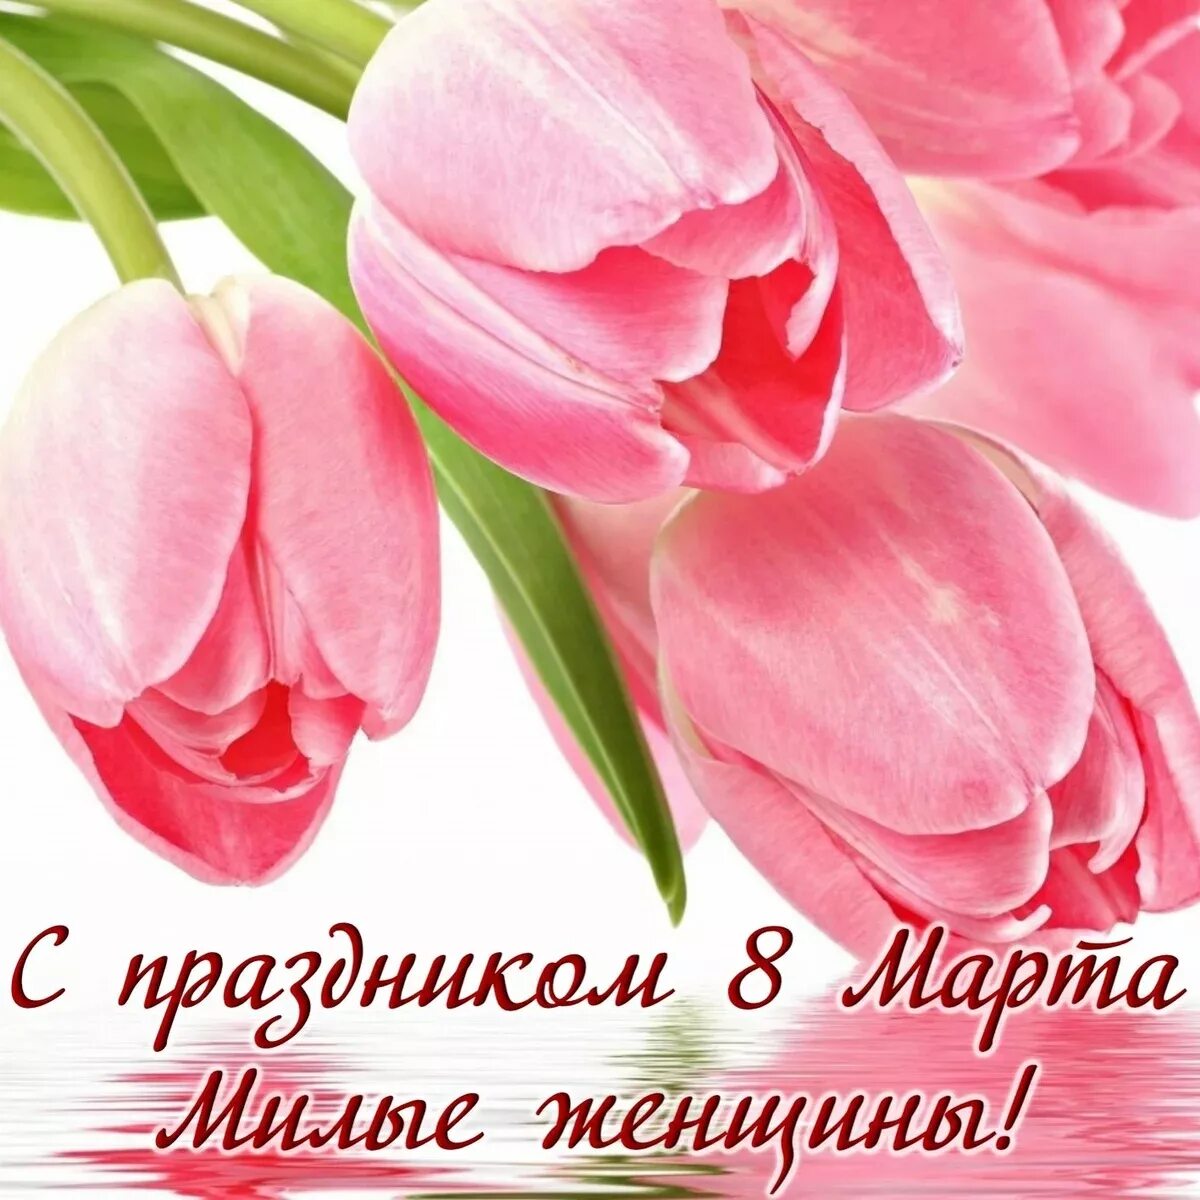 Тюльпаны открытки красивые с пожеланиями